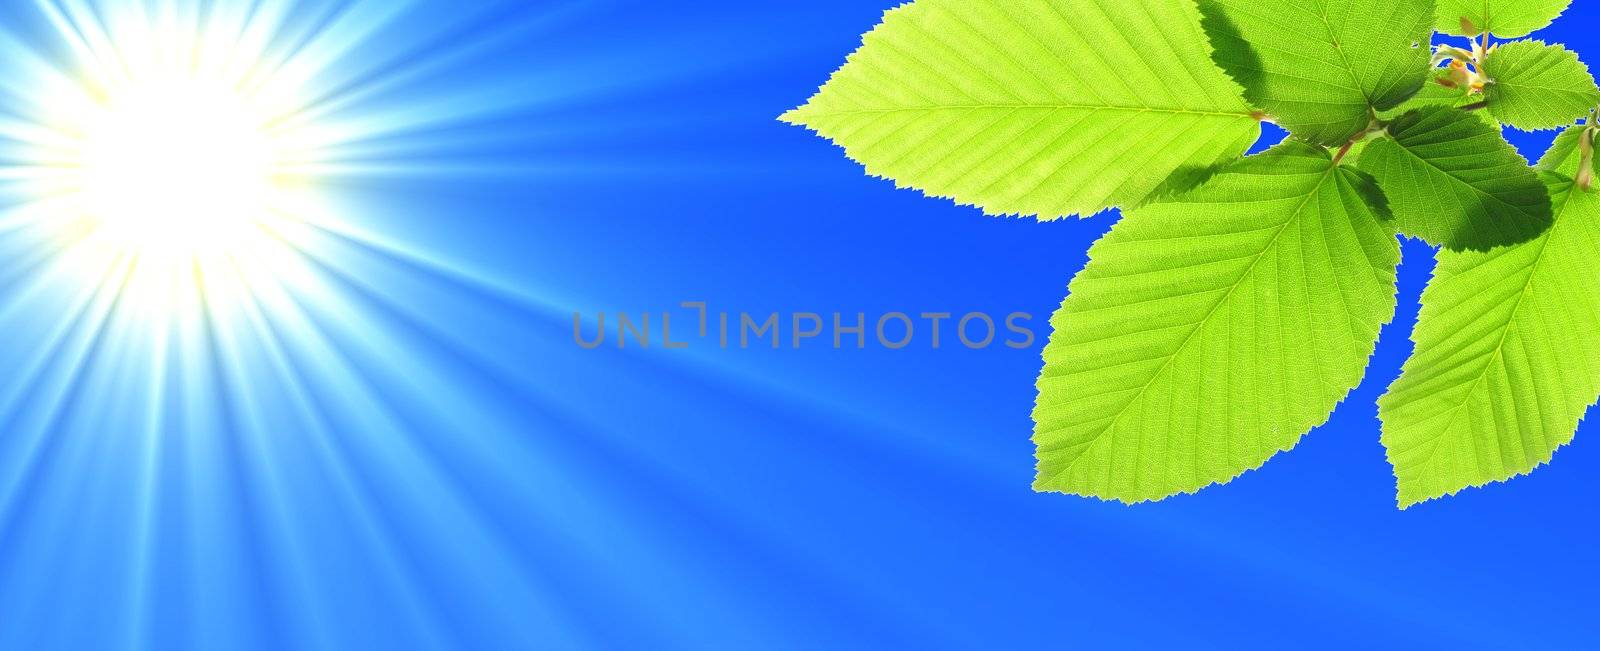 blue sky and leaf by gunnar3000